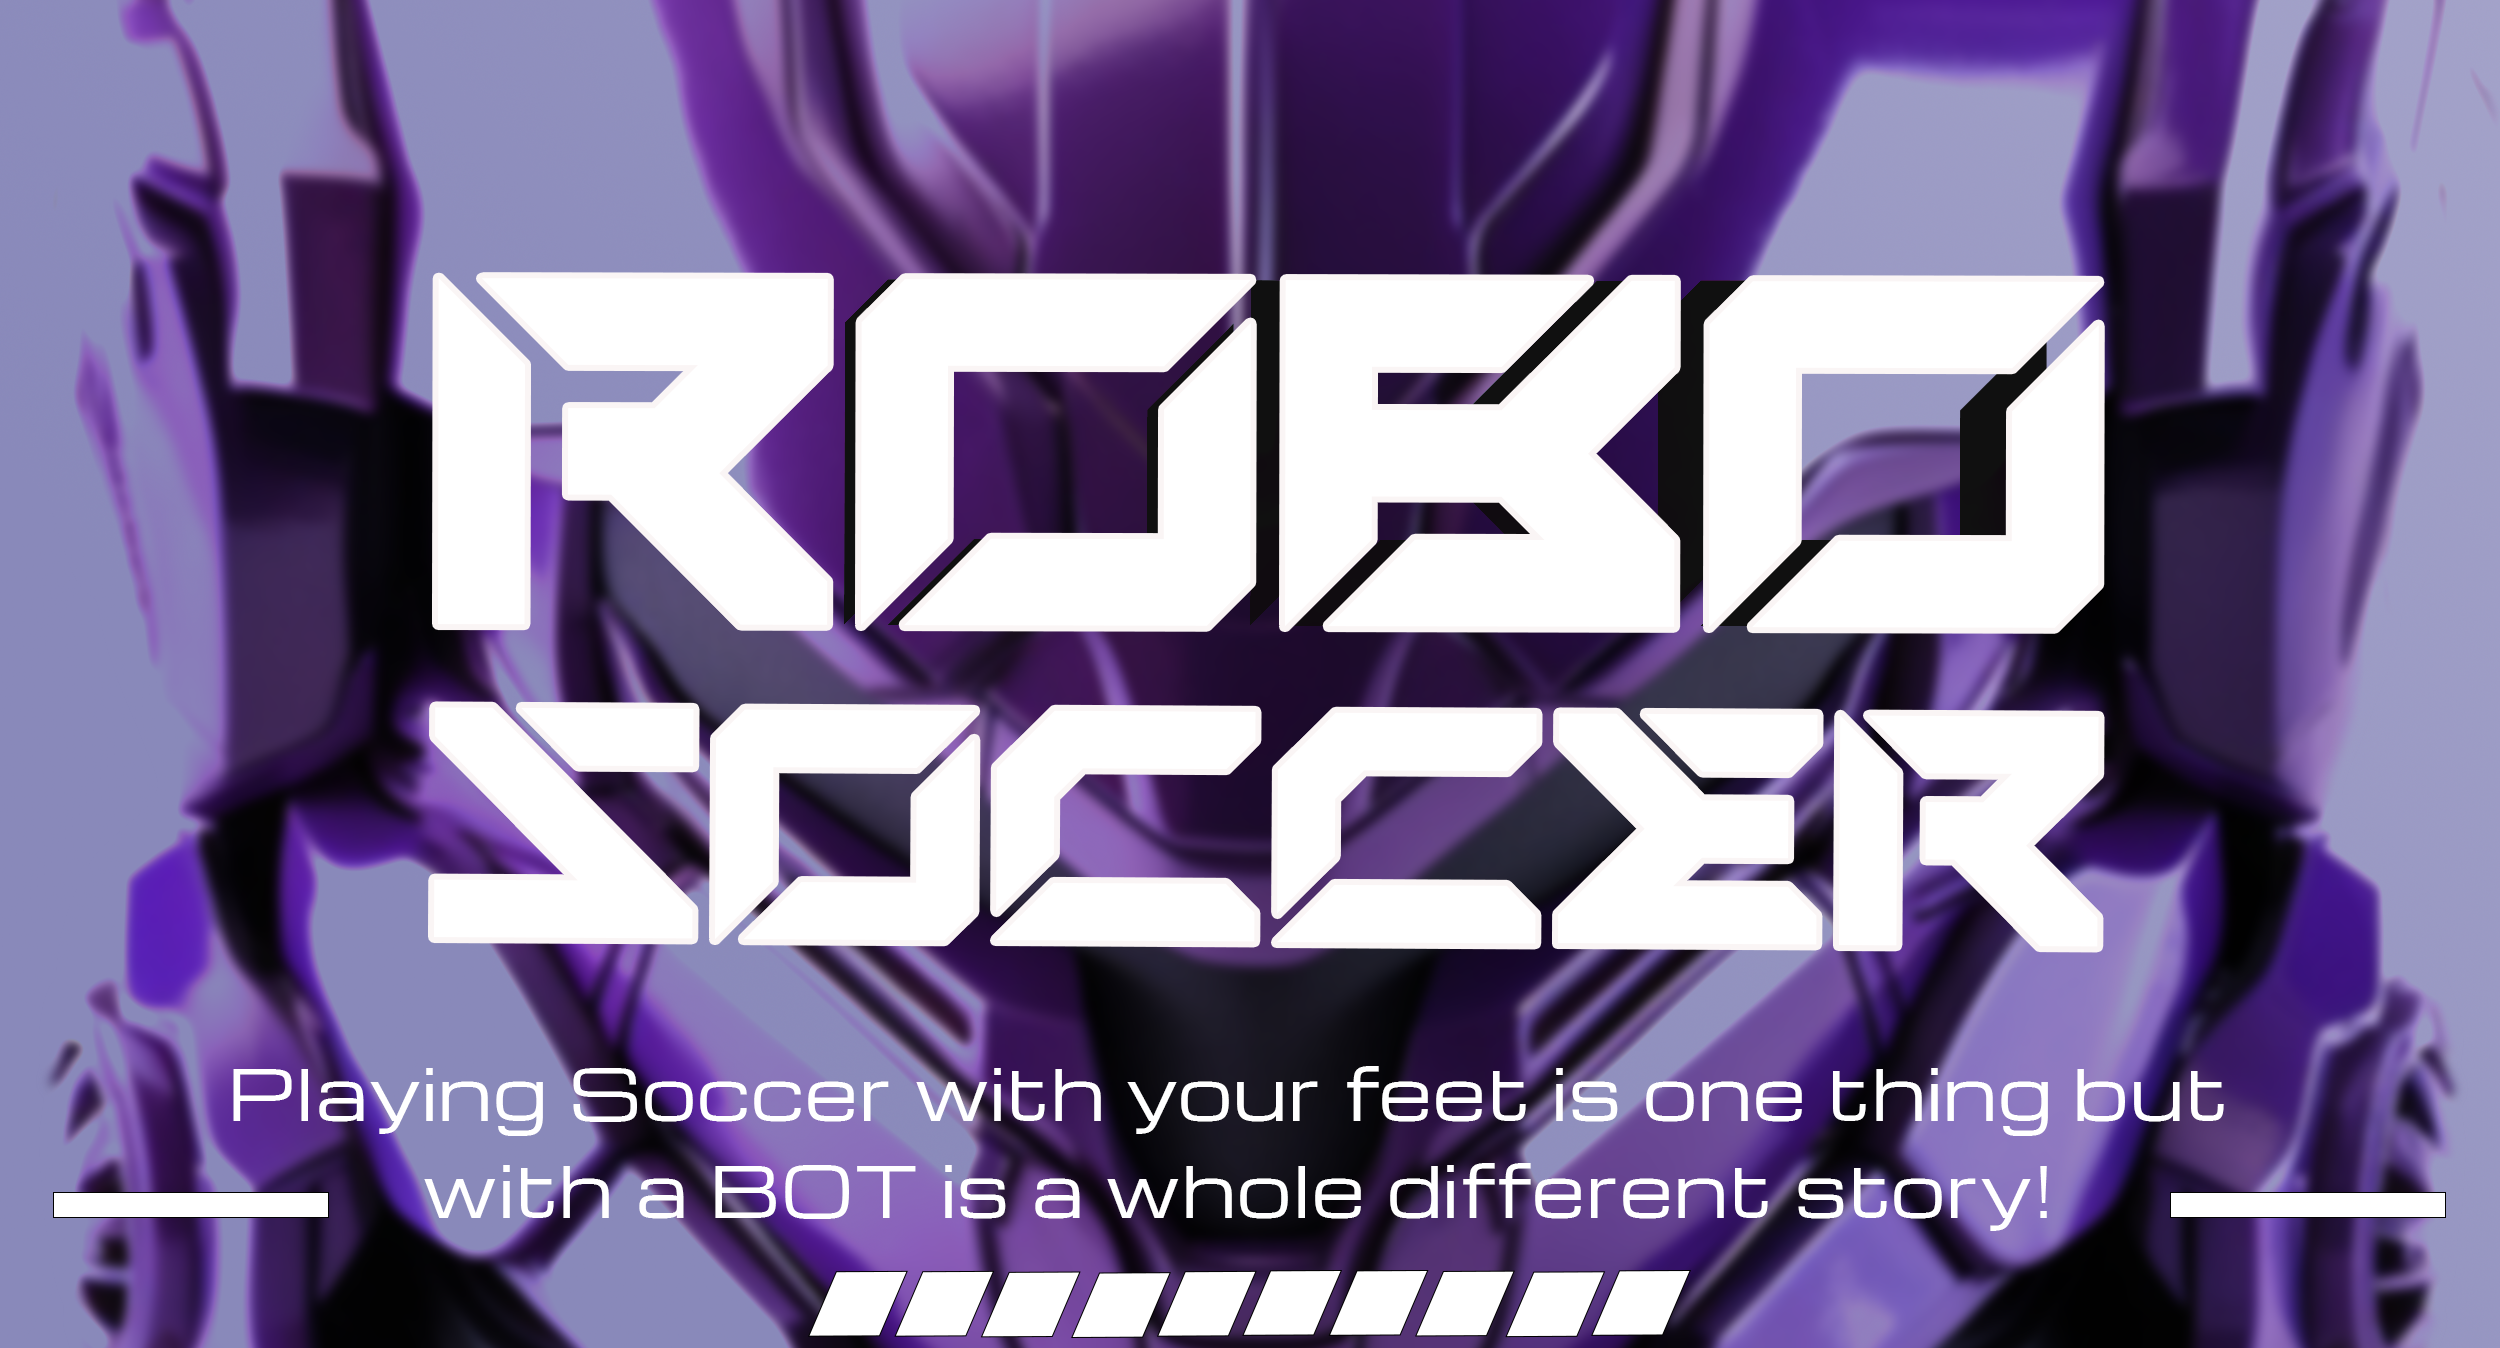 Robo soccer